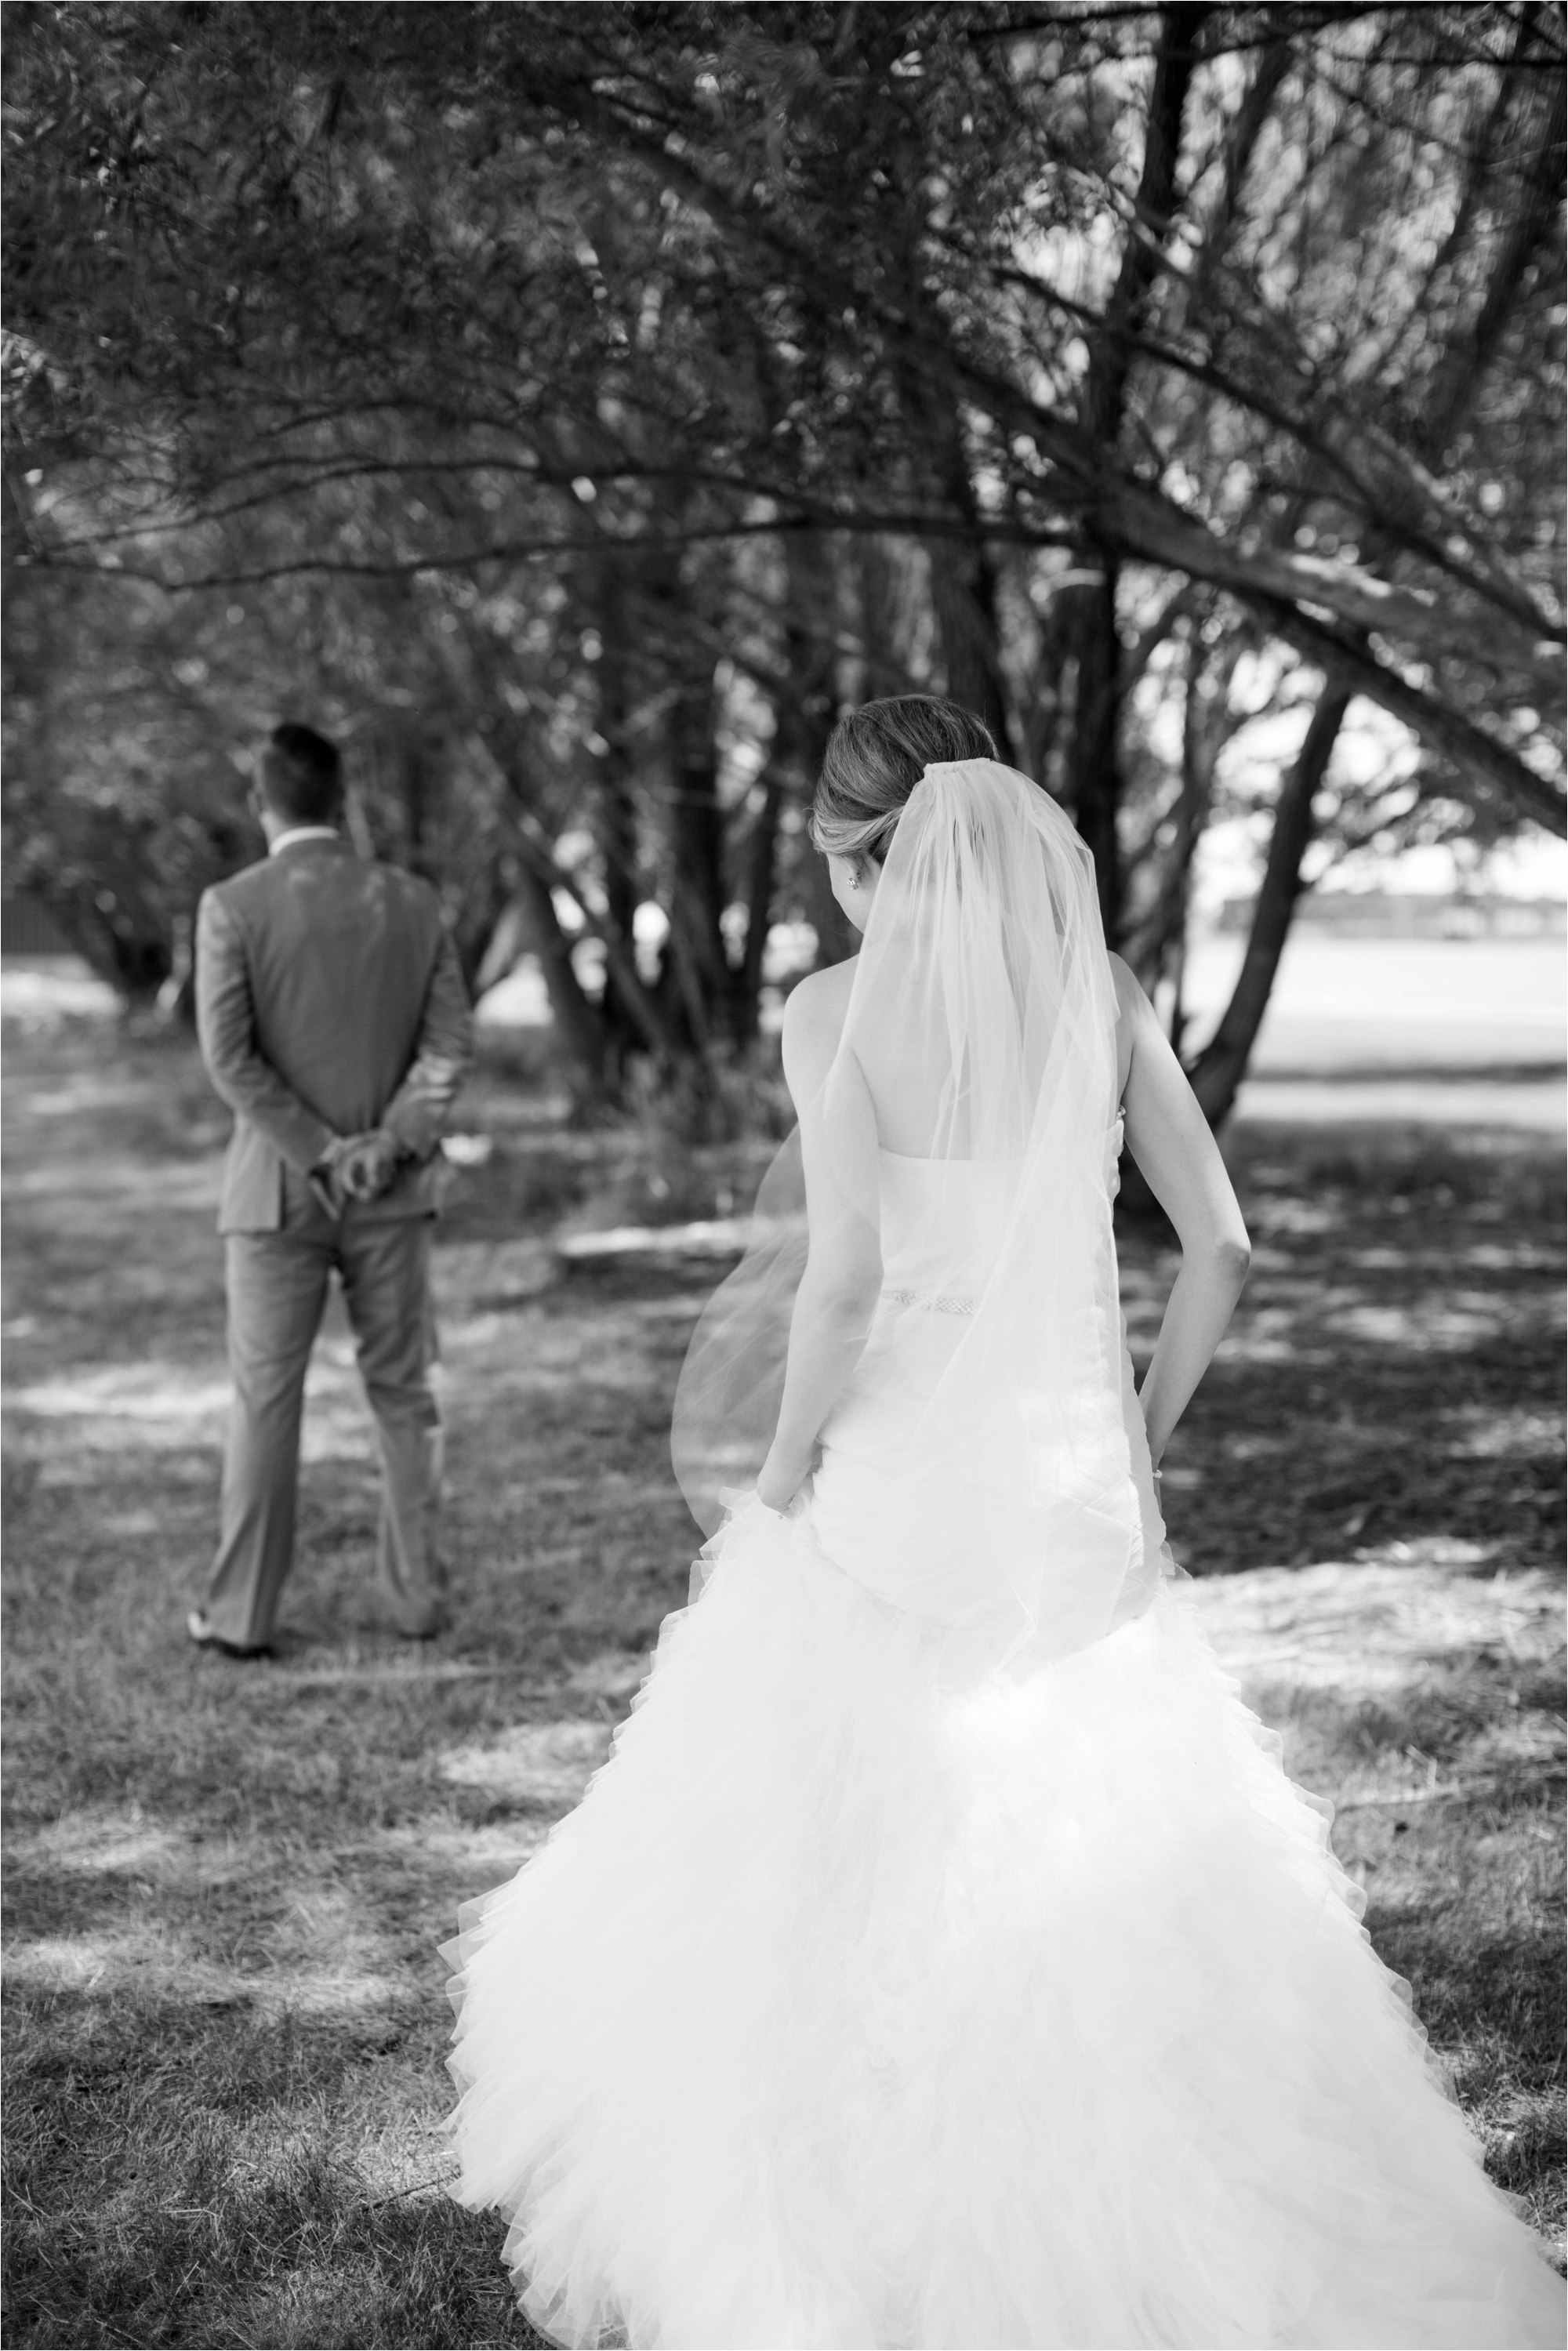 Caitlin and Luke Photography, Bloomington Normal Wedding Photographers, Illinois Wedding Photographers, Illinois Husband and Wife Wedding Photography Team_0276.jpg